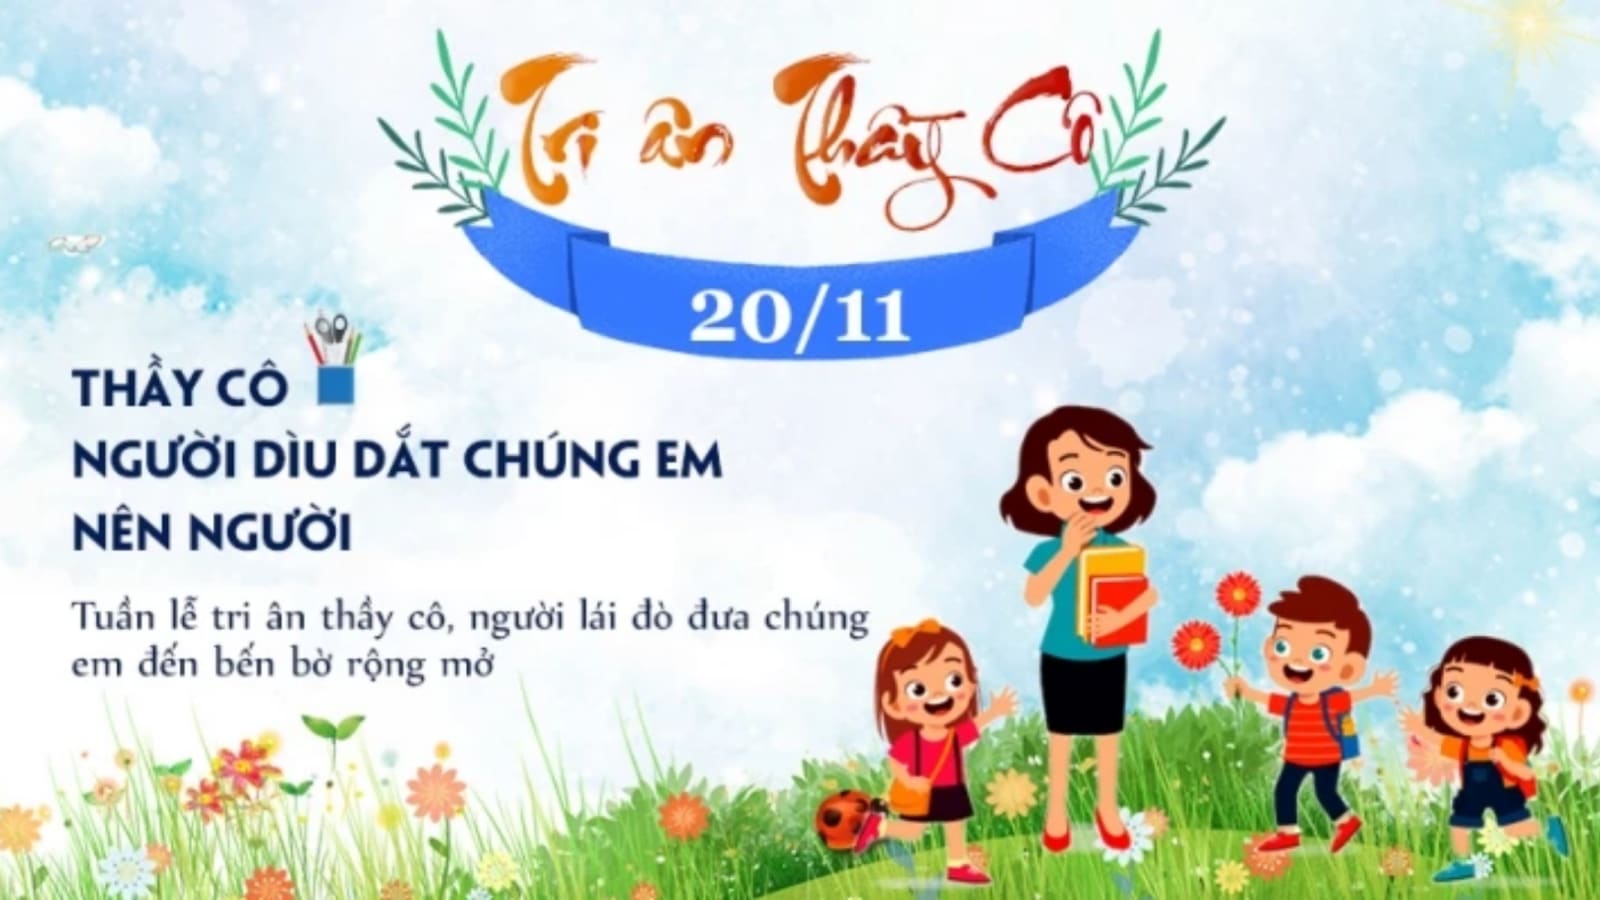 Lễ kỷ niệm ngày Nhà giáo Việt Nam càng trở nên hoàn hảo hơn với mẫu phông nền và backdrop độc đáo. Hãy cùng xem những ý tưởng để tăng thêm sự long trọng cho ngày tôn vinh các nhà giáo của chúng ta.